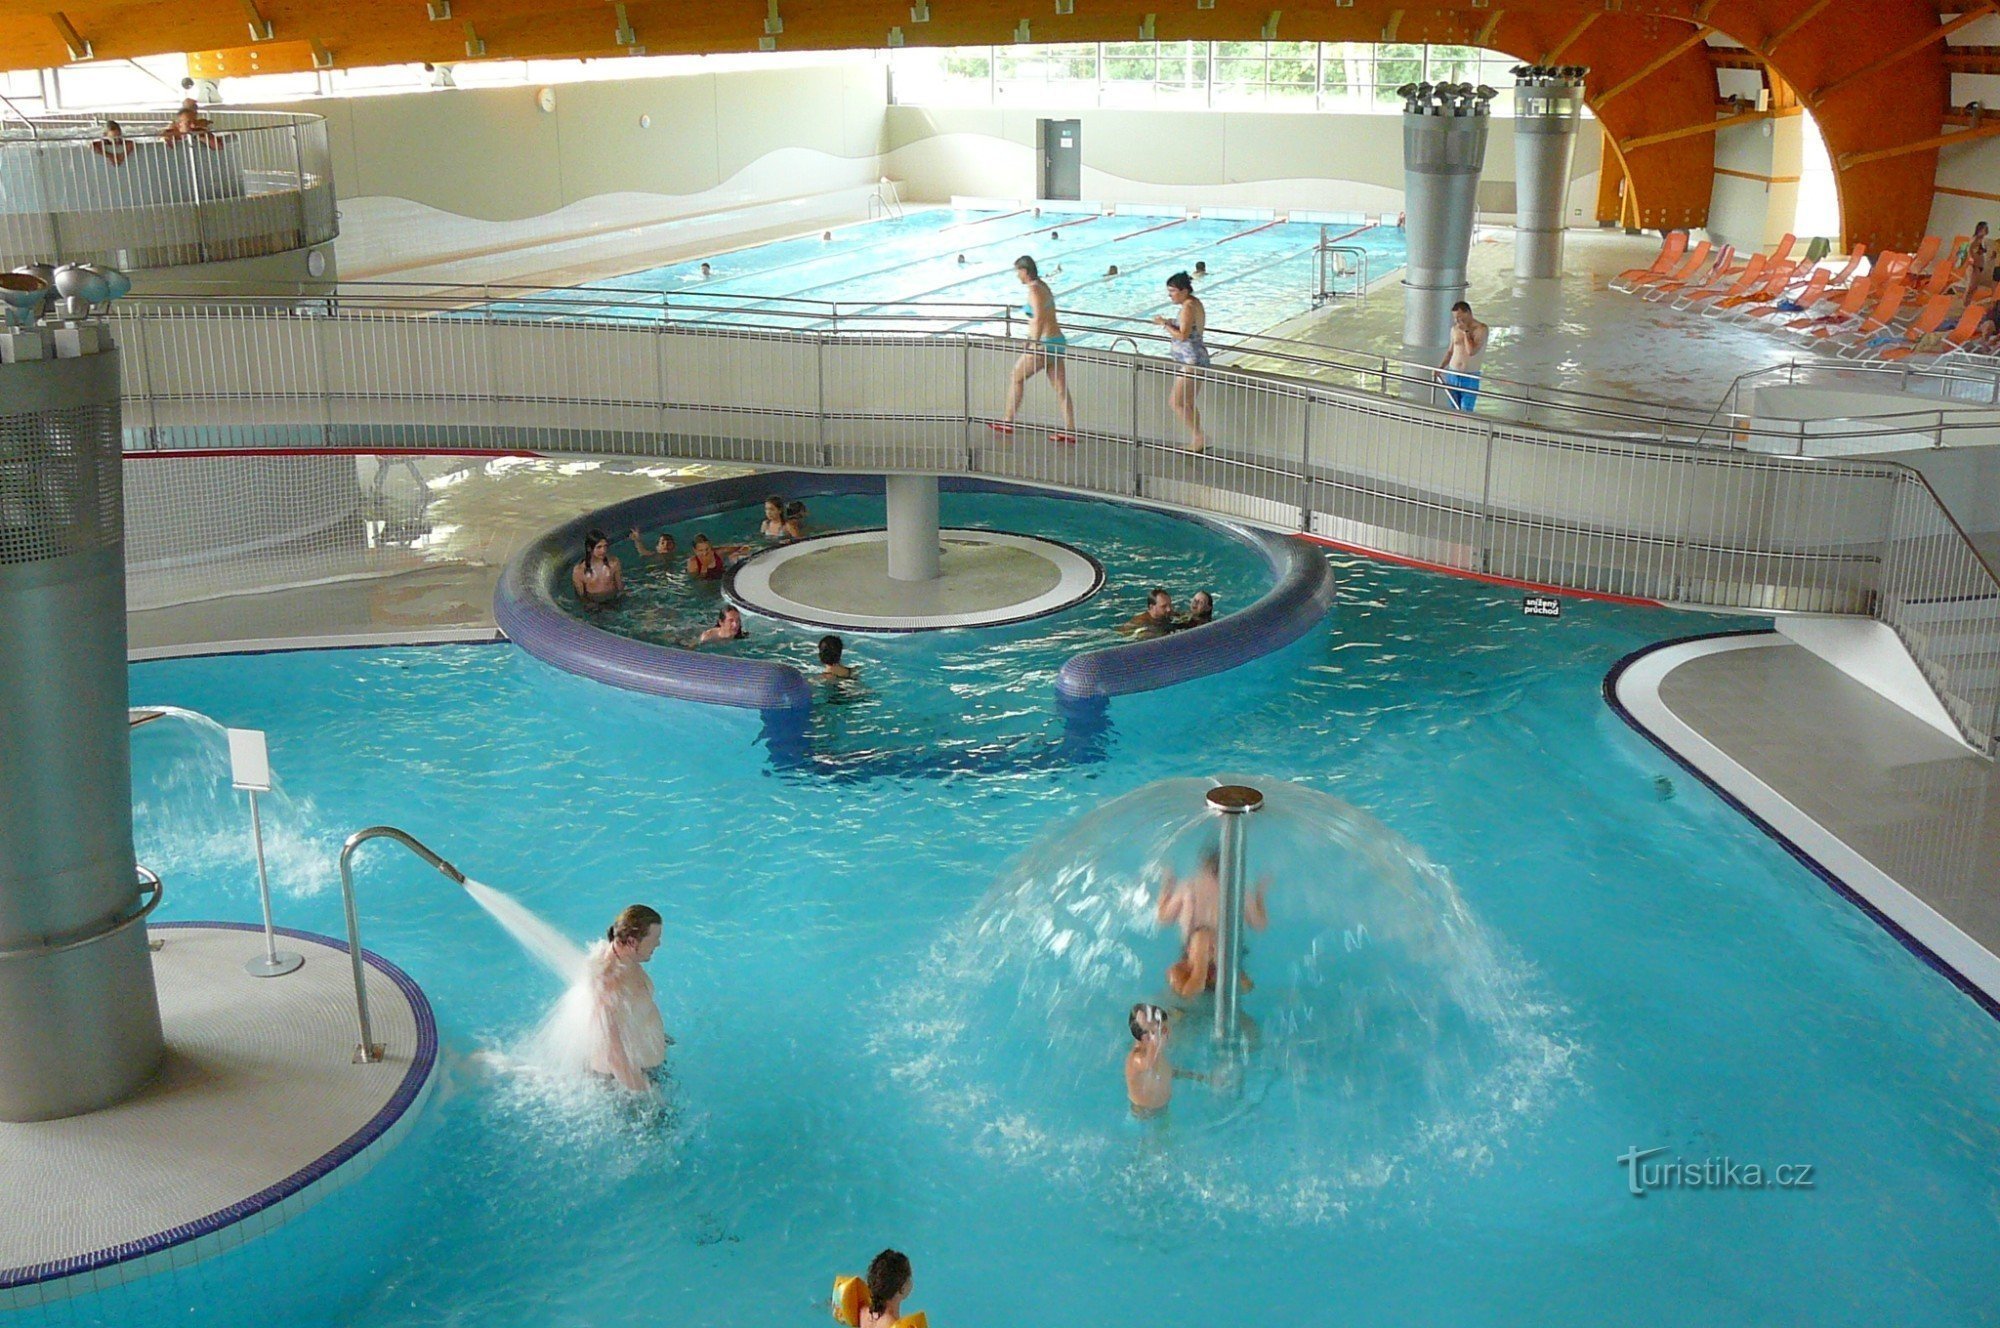 Splošni pogled na rekreacijski bazen in bazen v ozadju